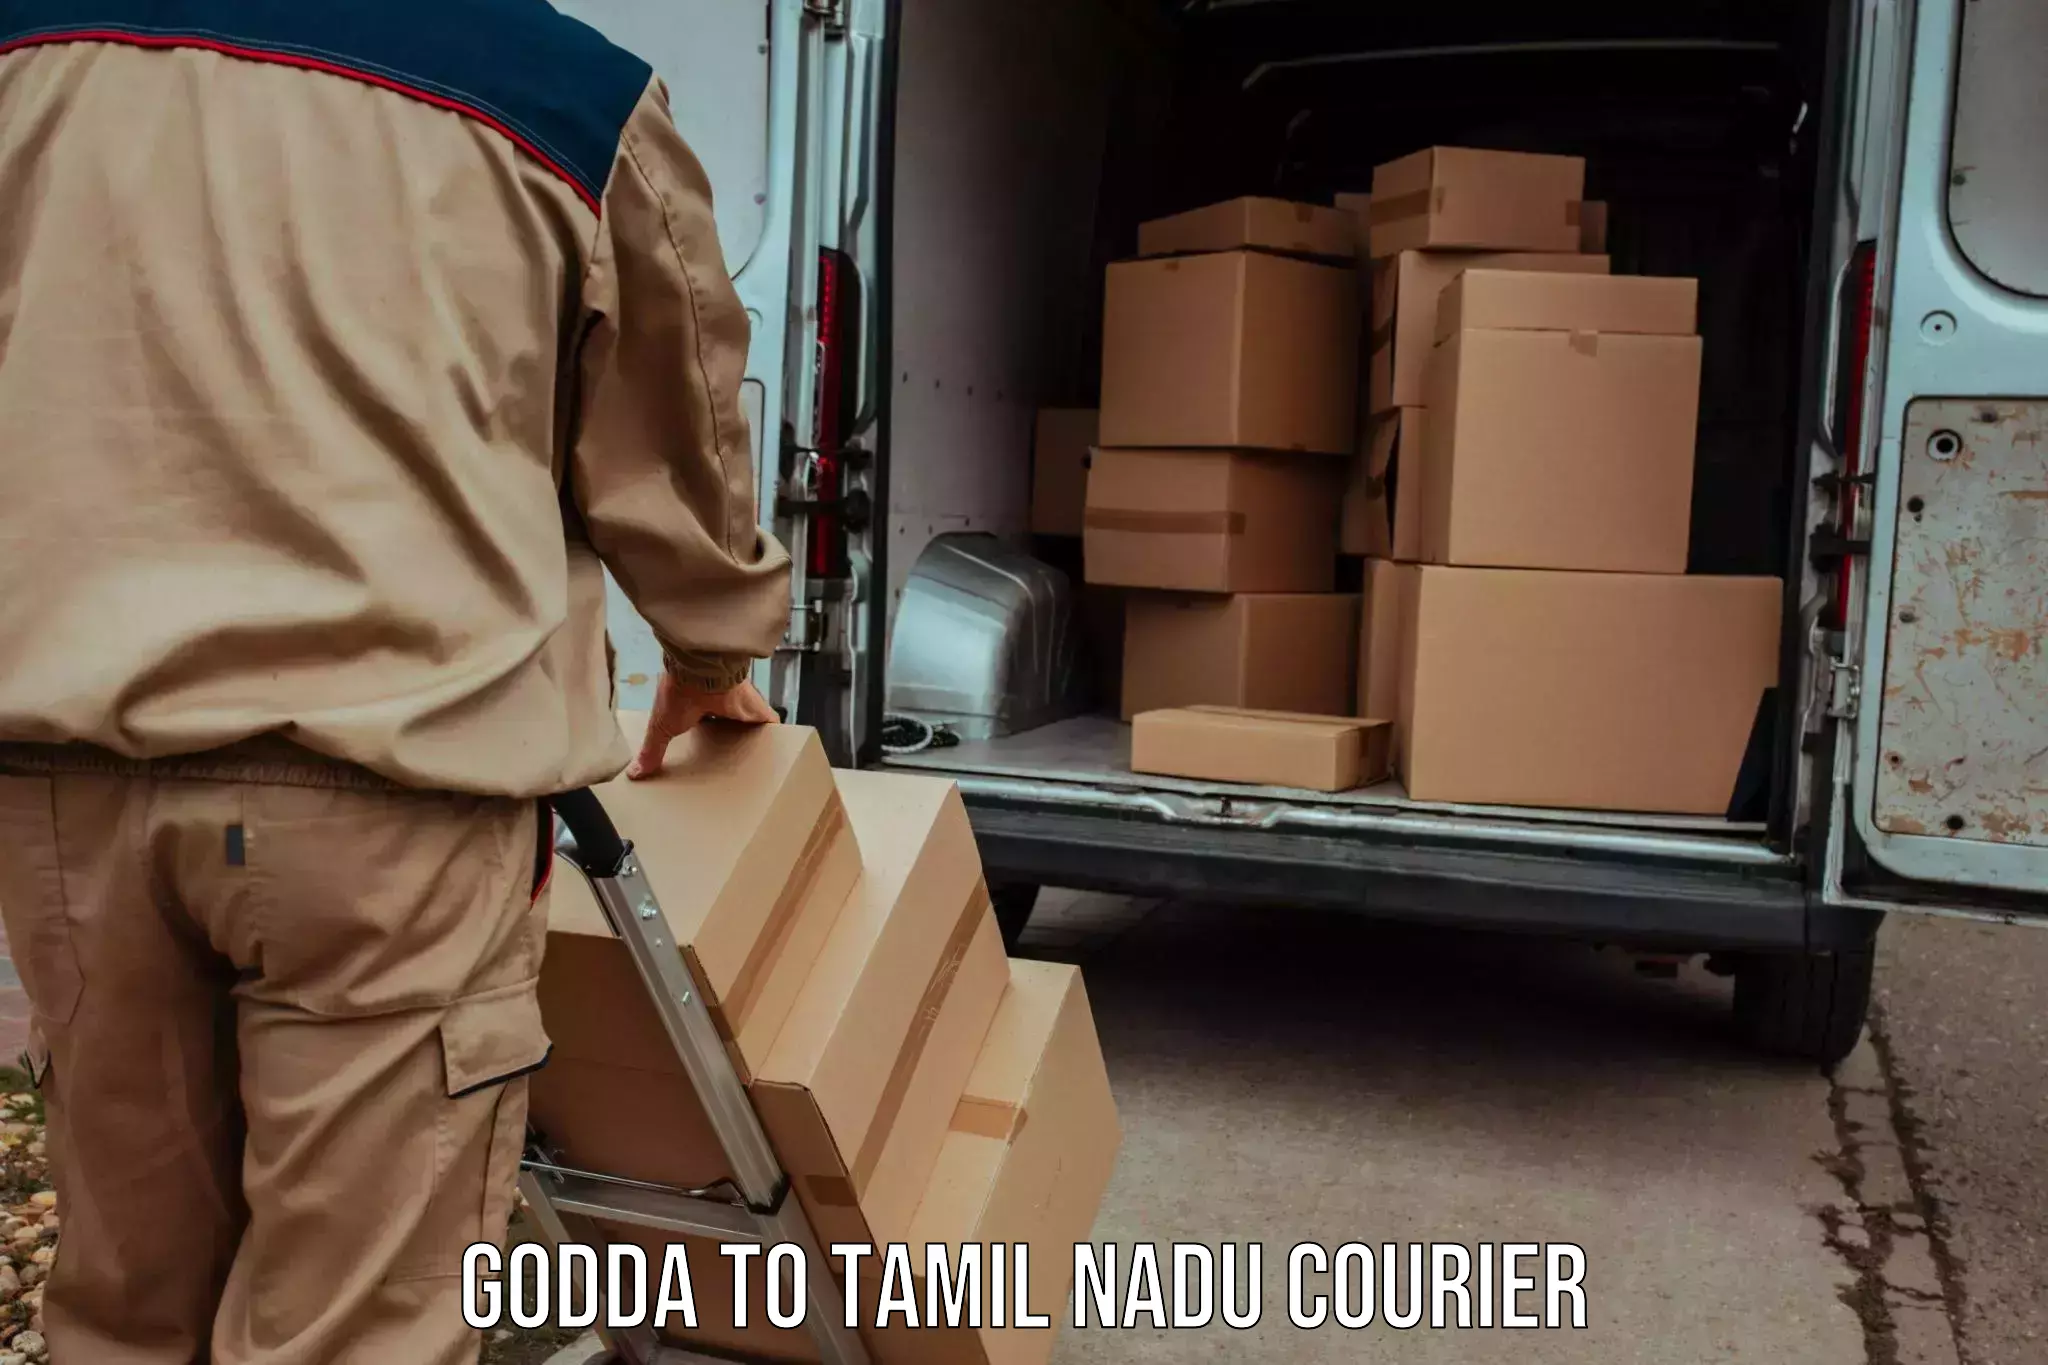 Cargo delivery service Godda to Tamil Nadu